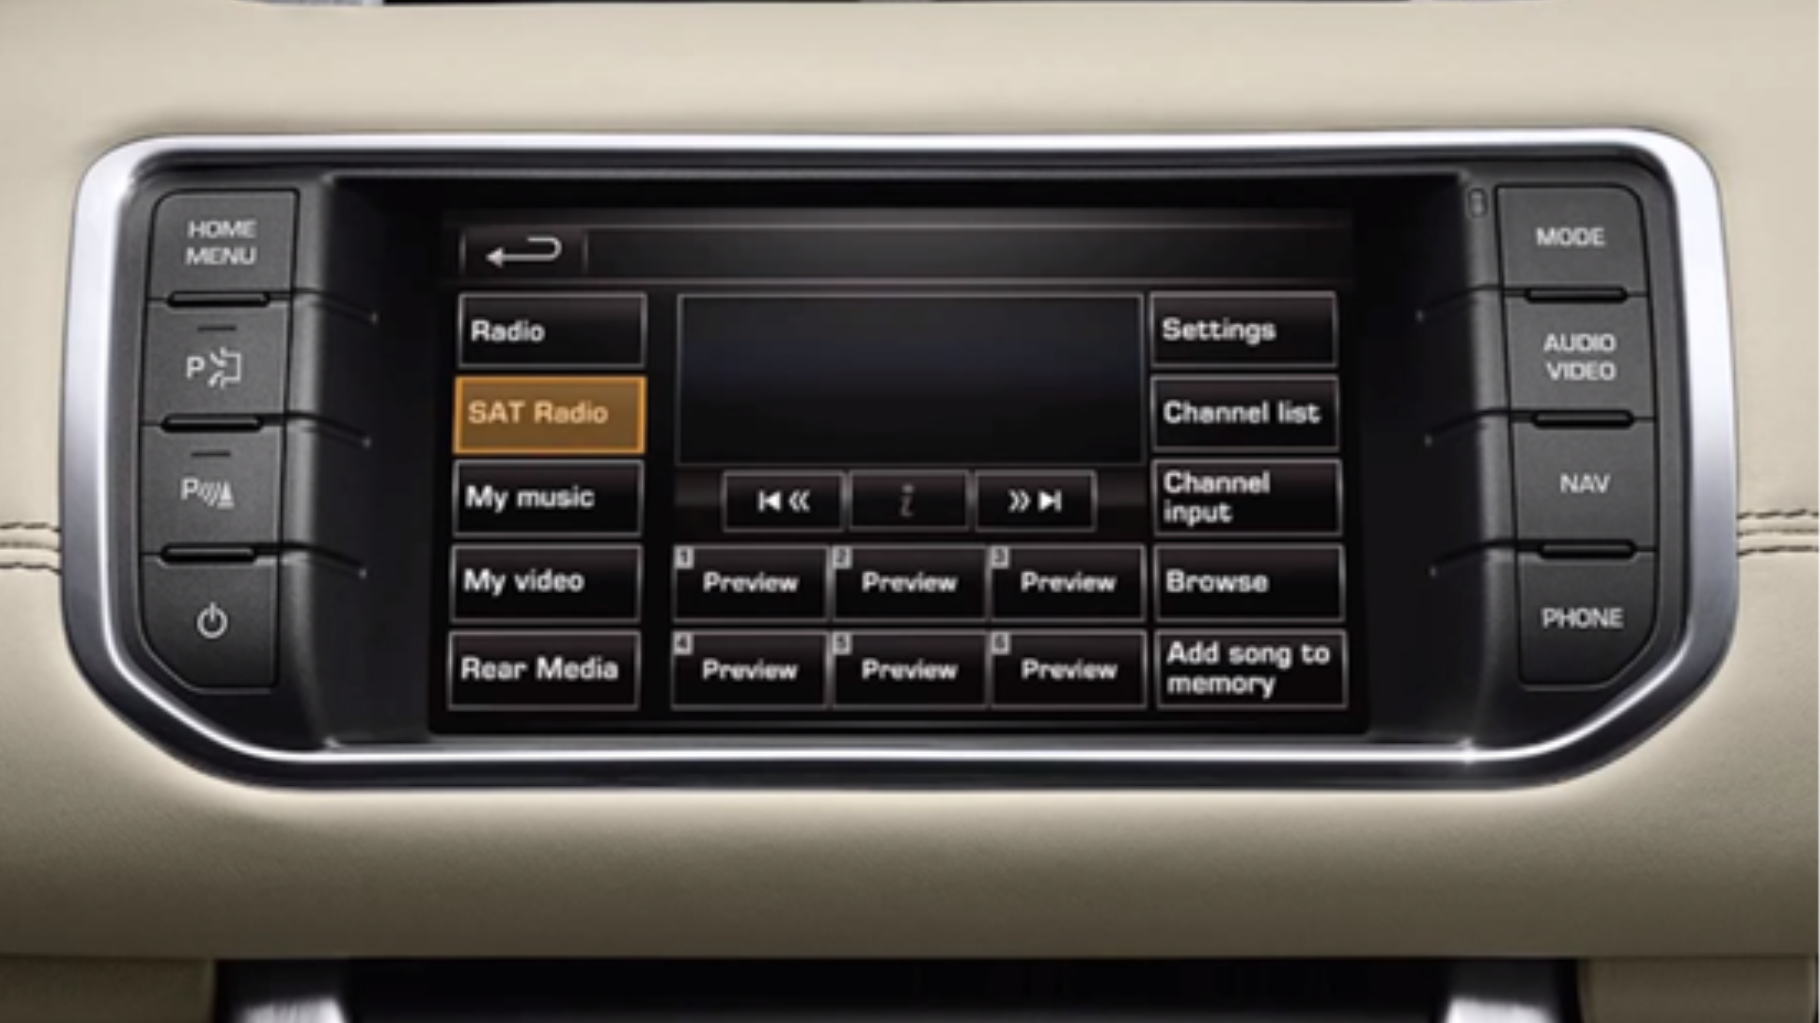 Range Rover Evoque Satellite Radio